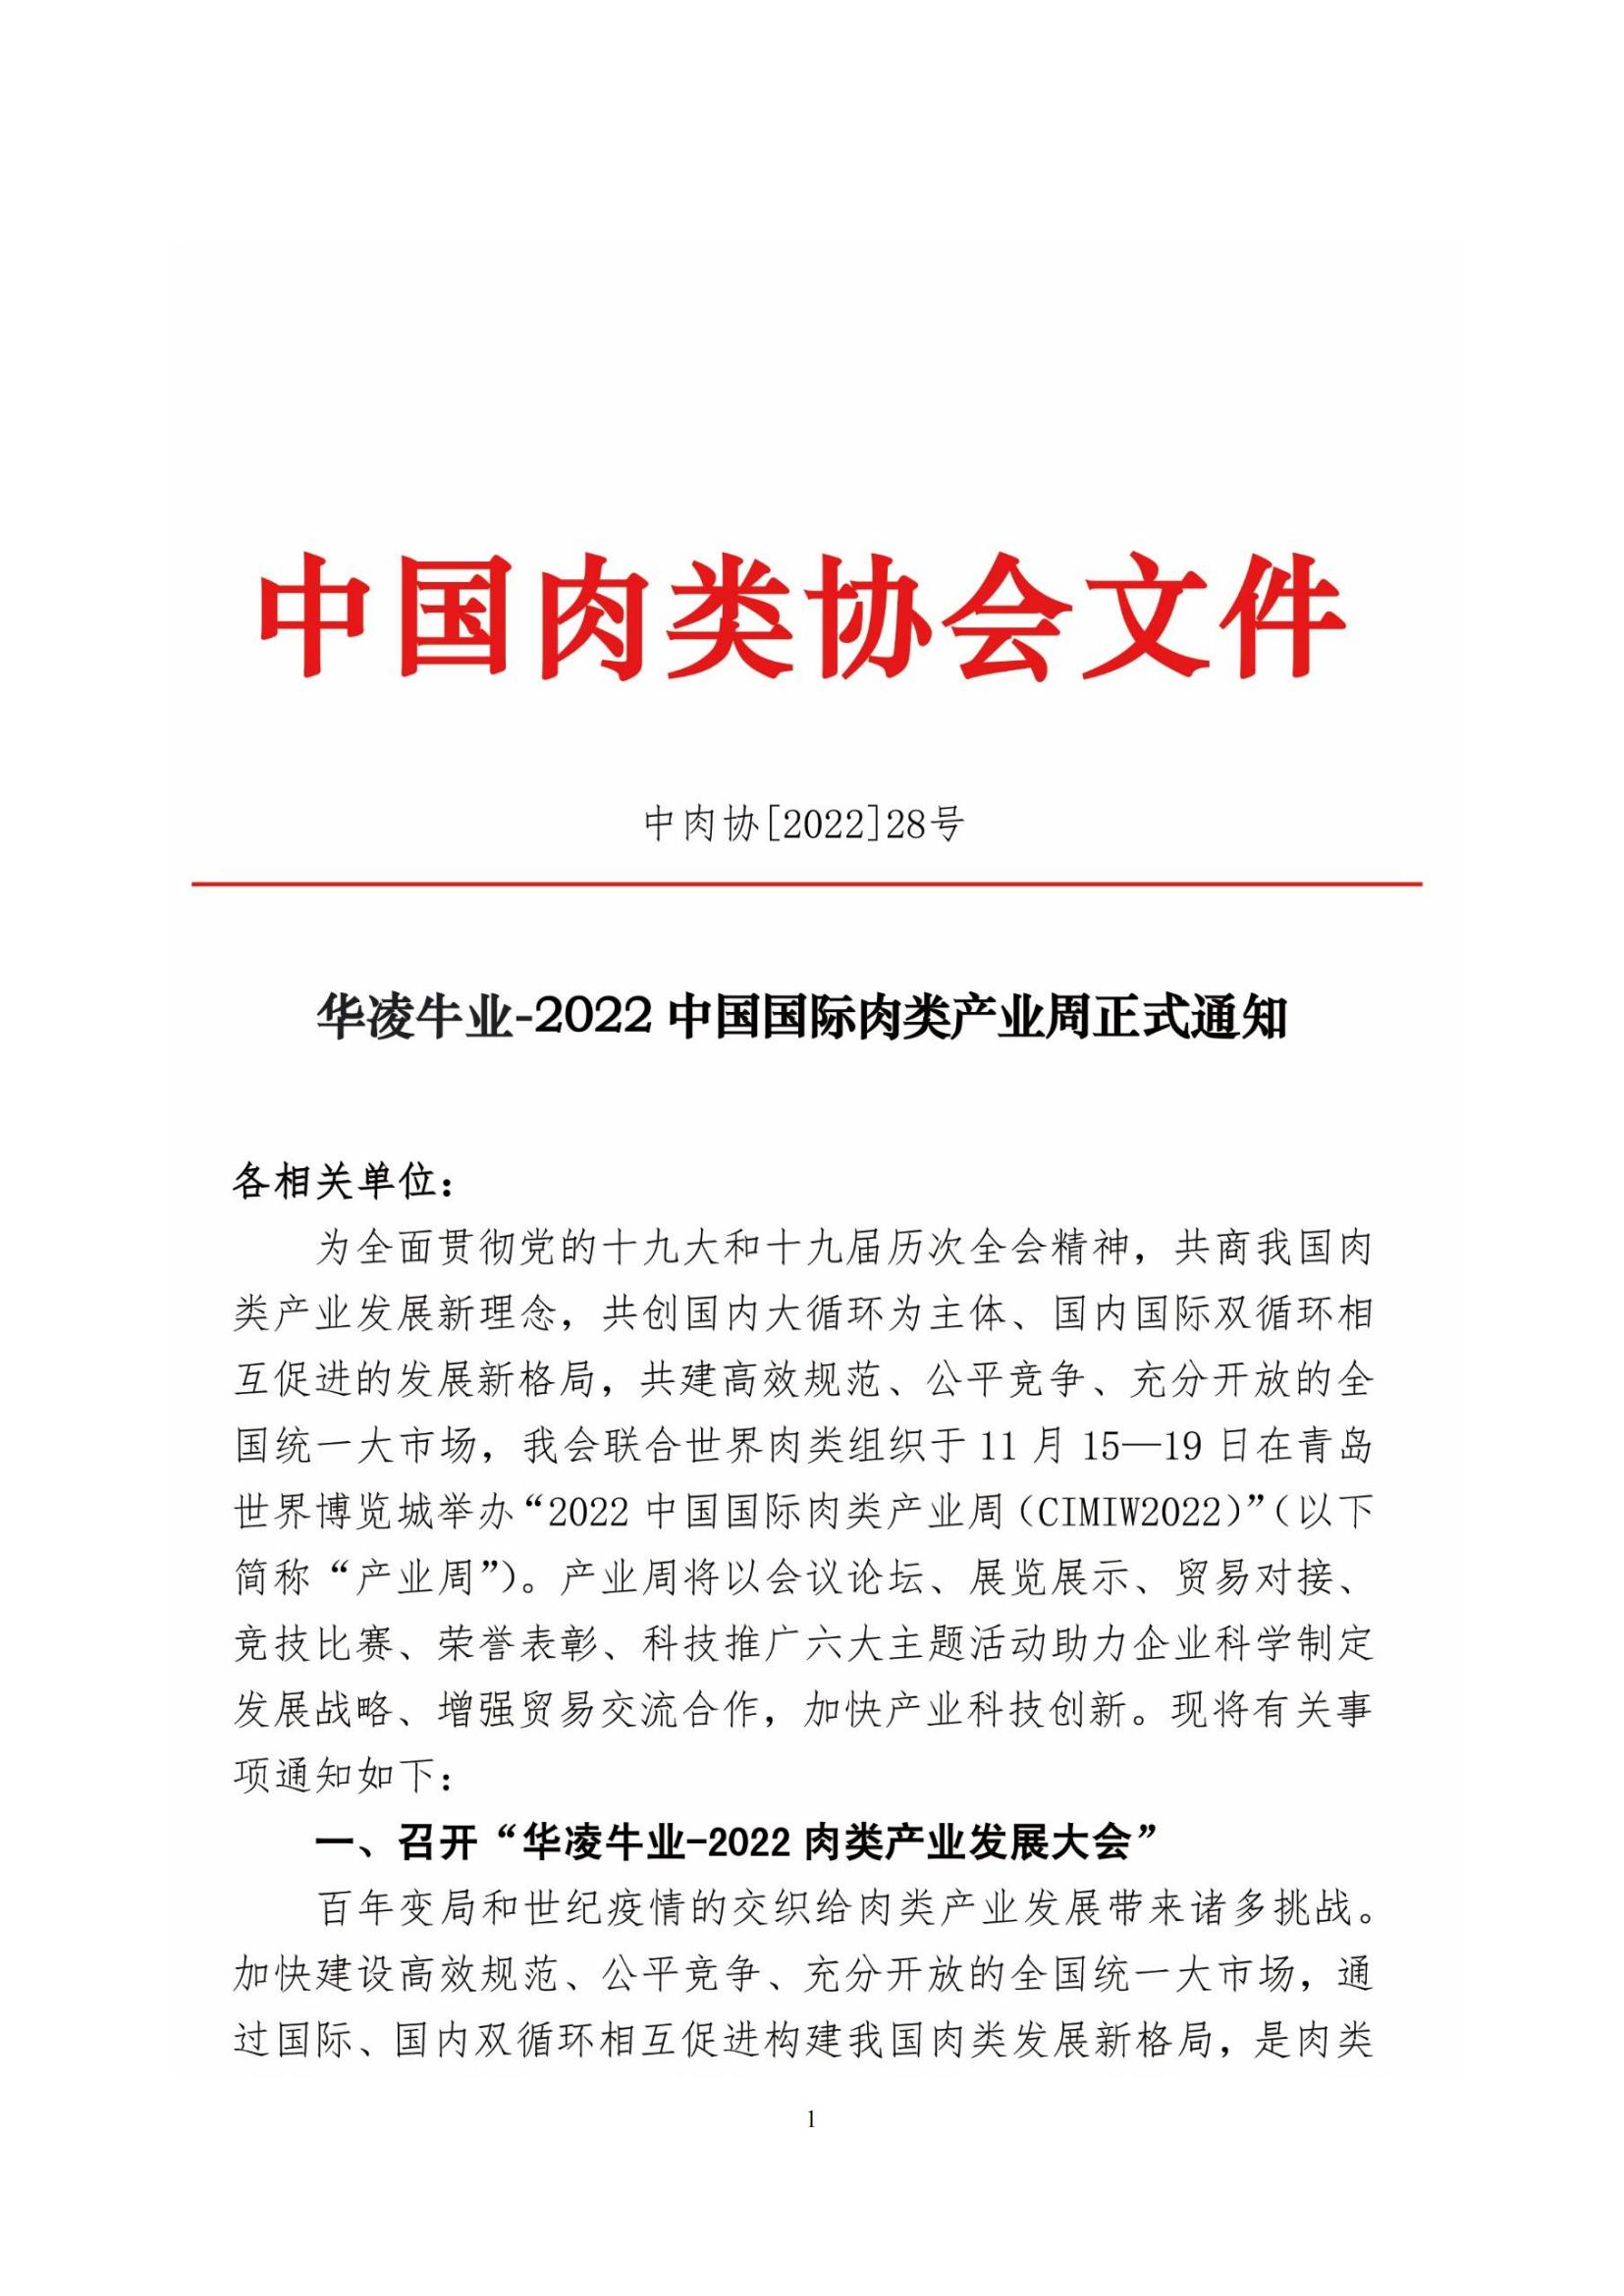 28号--2022中国国际肉类产业周正式通知_00.jpg